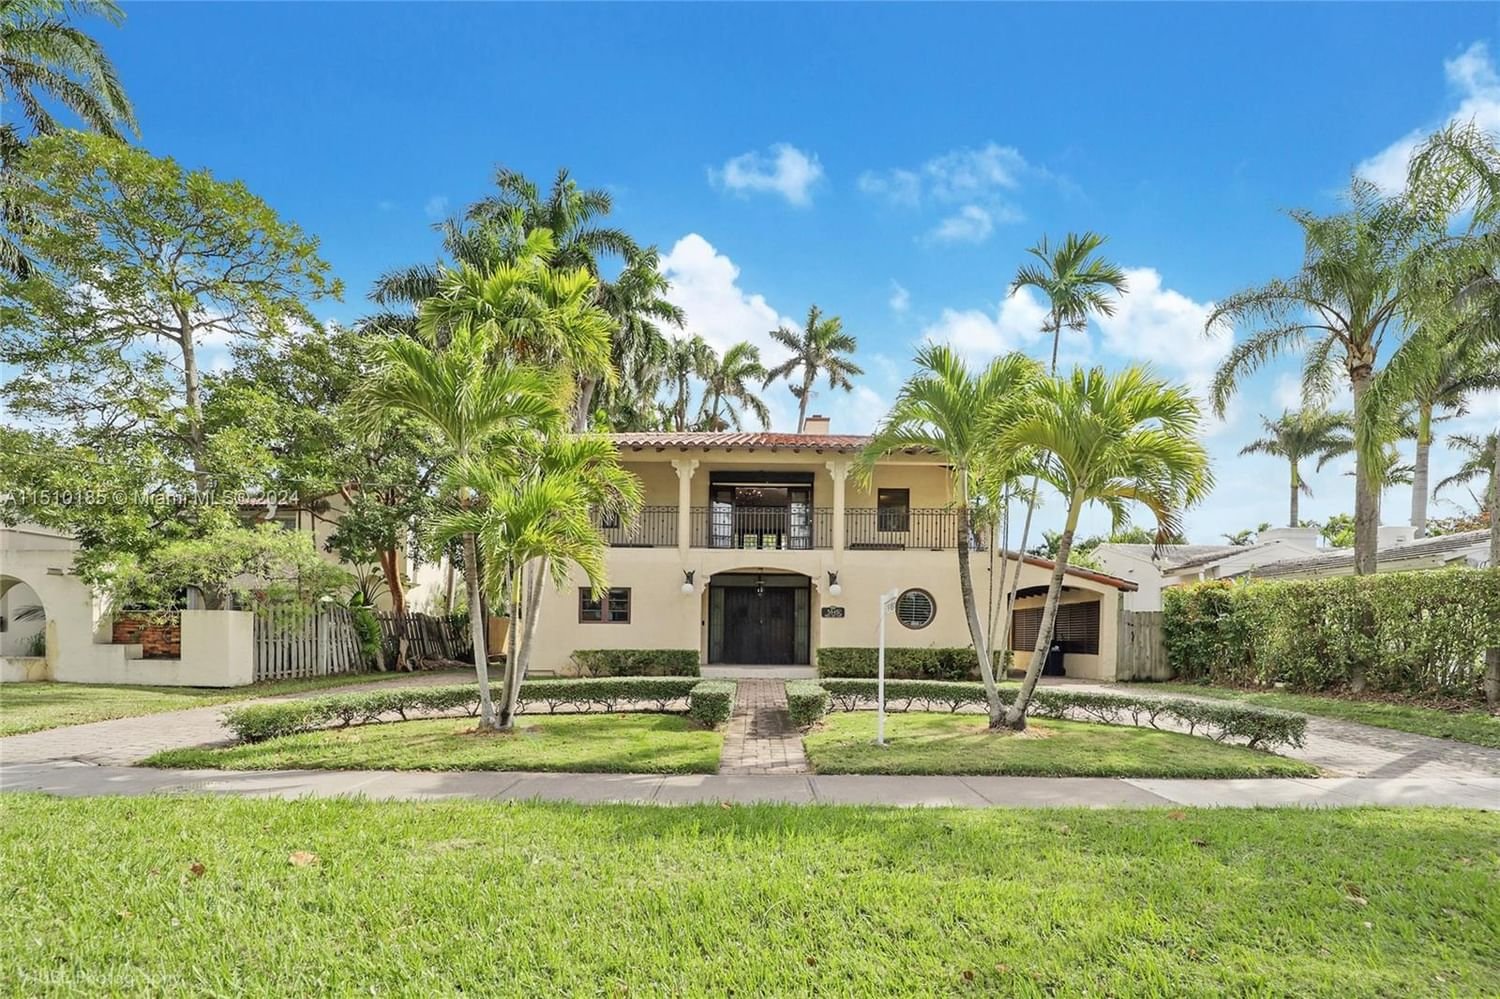 Real estate property located at 5845 Bay Rd, Miami-Dade County, LA GORCE GOLF SUB, Miami Beach, FL